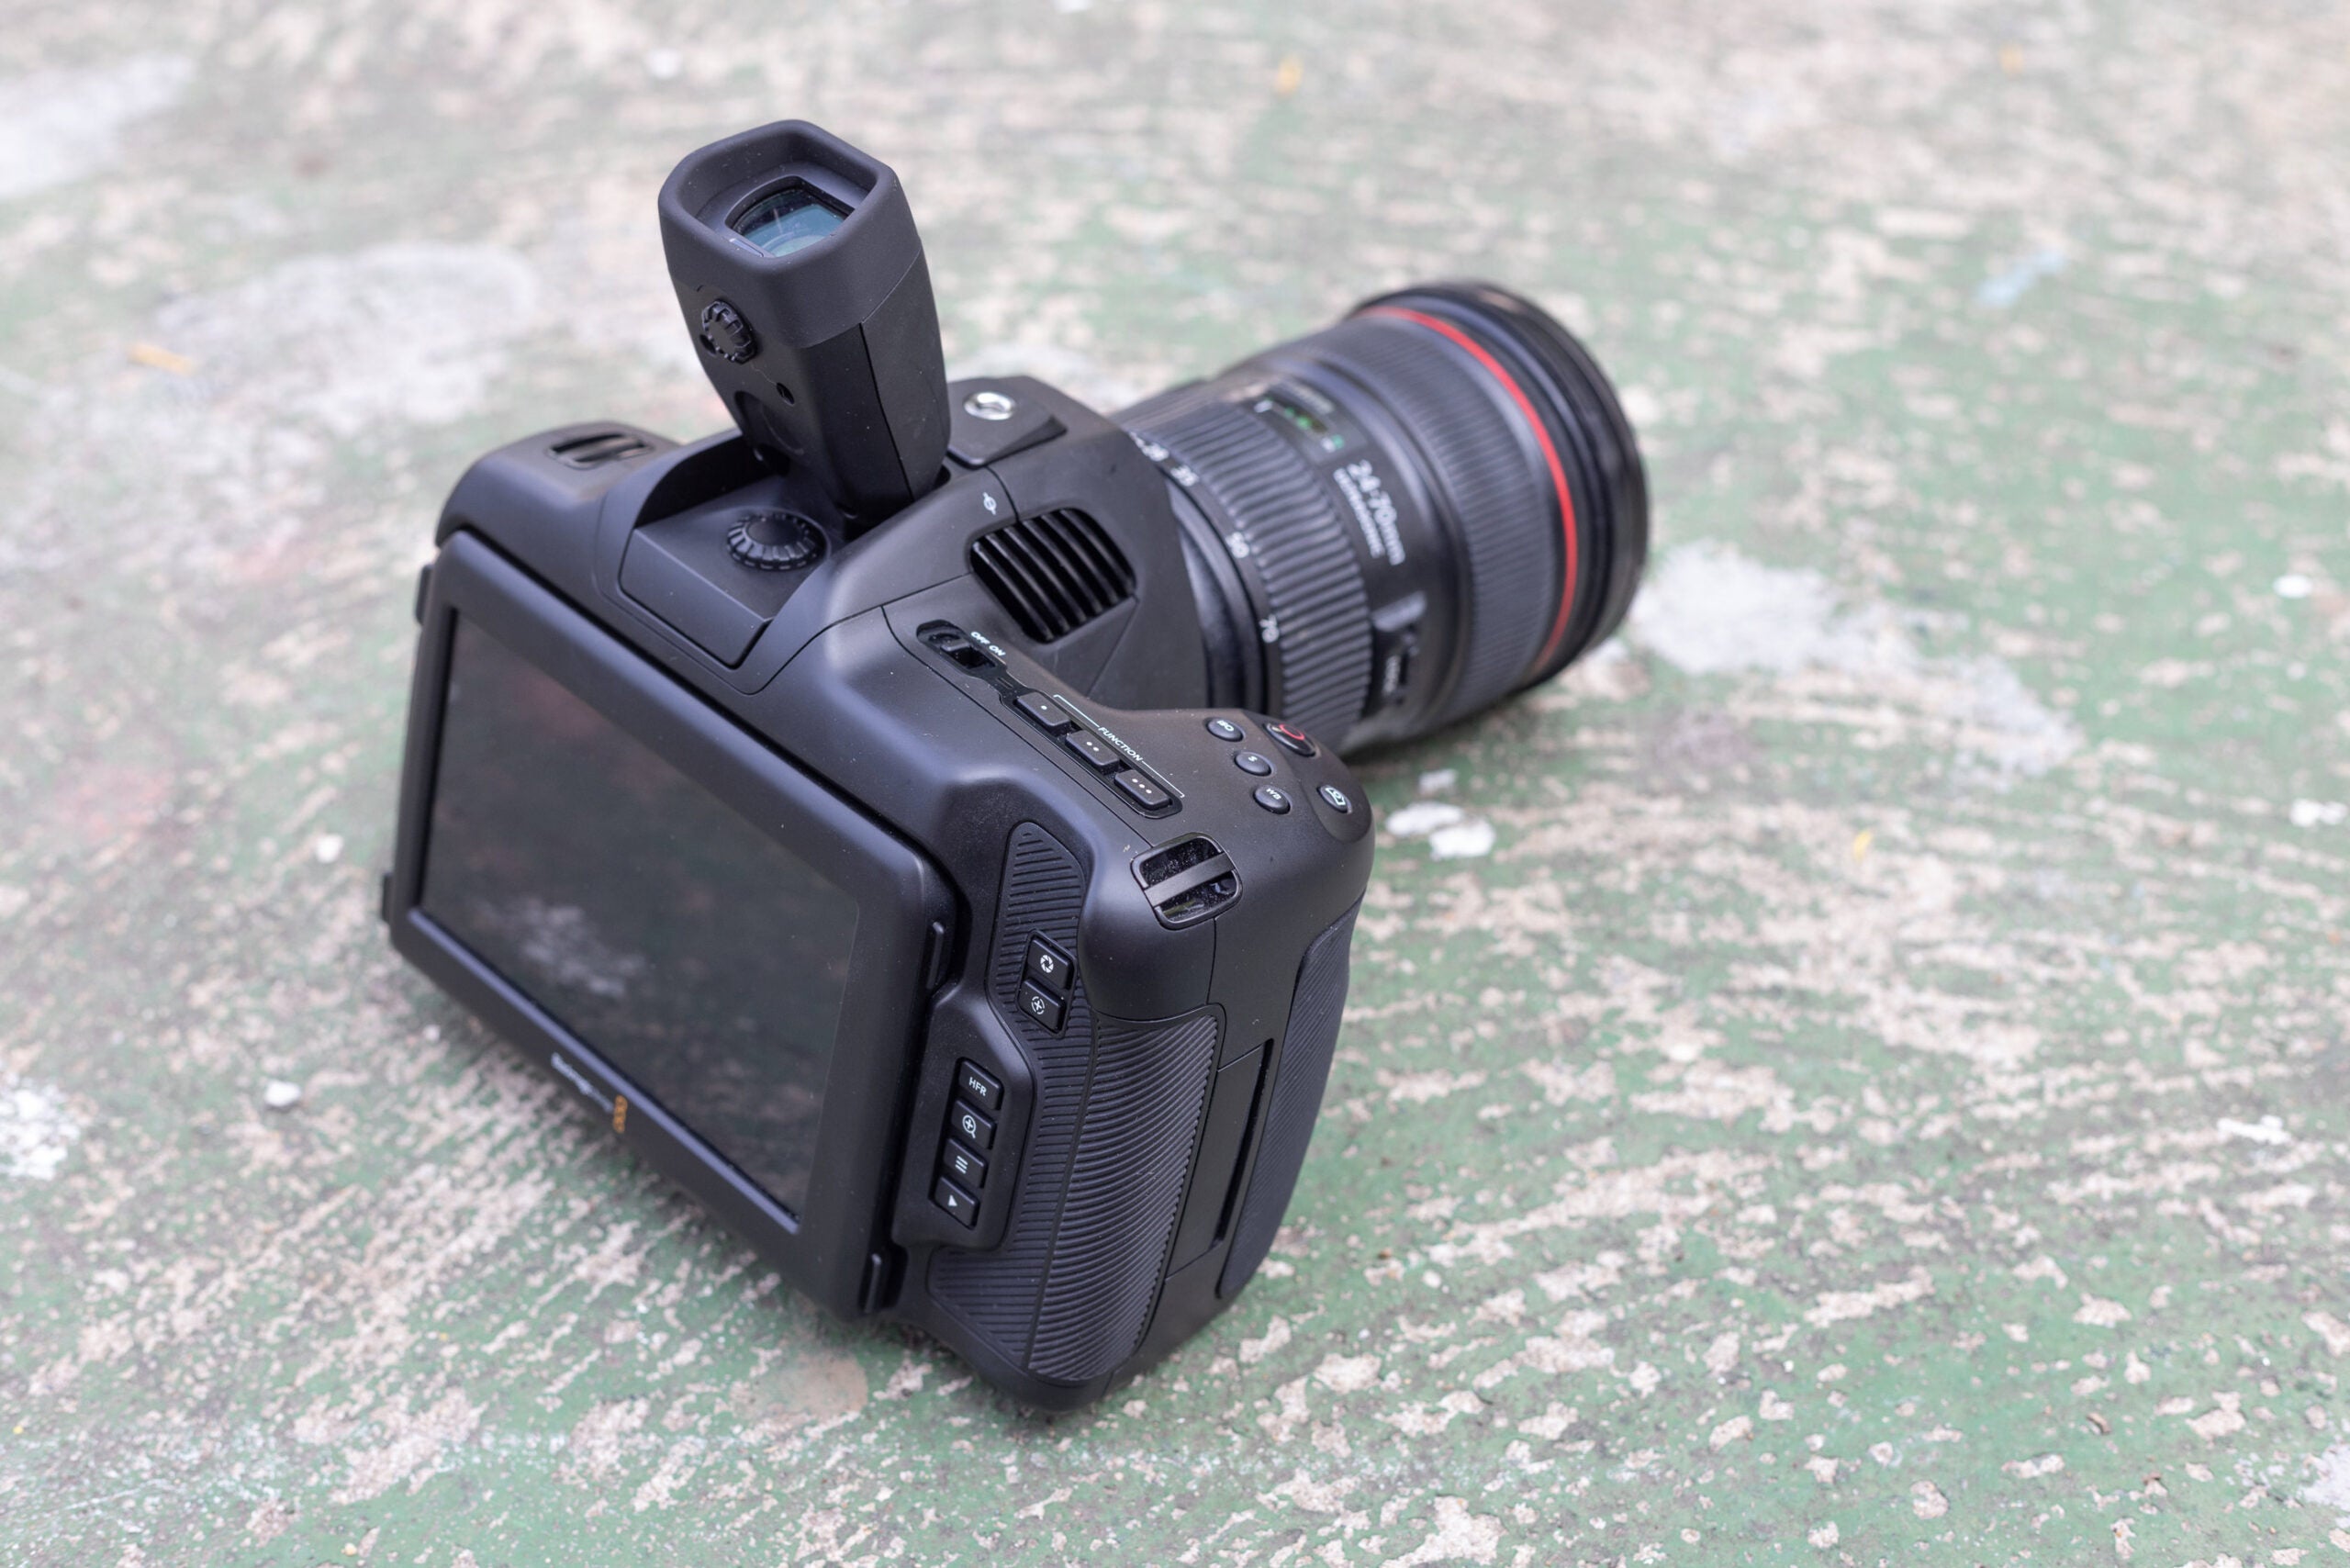 Blackmagic Design Pocket Cinema Camera 6K G2 with optional viewfinder